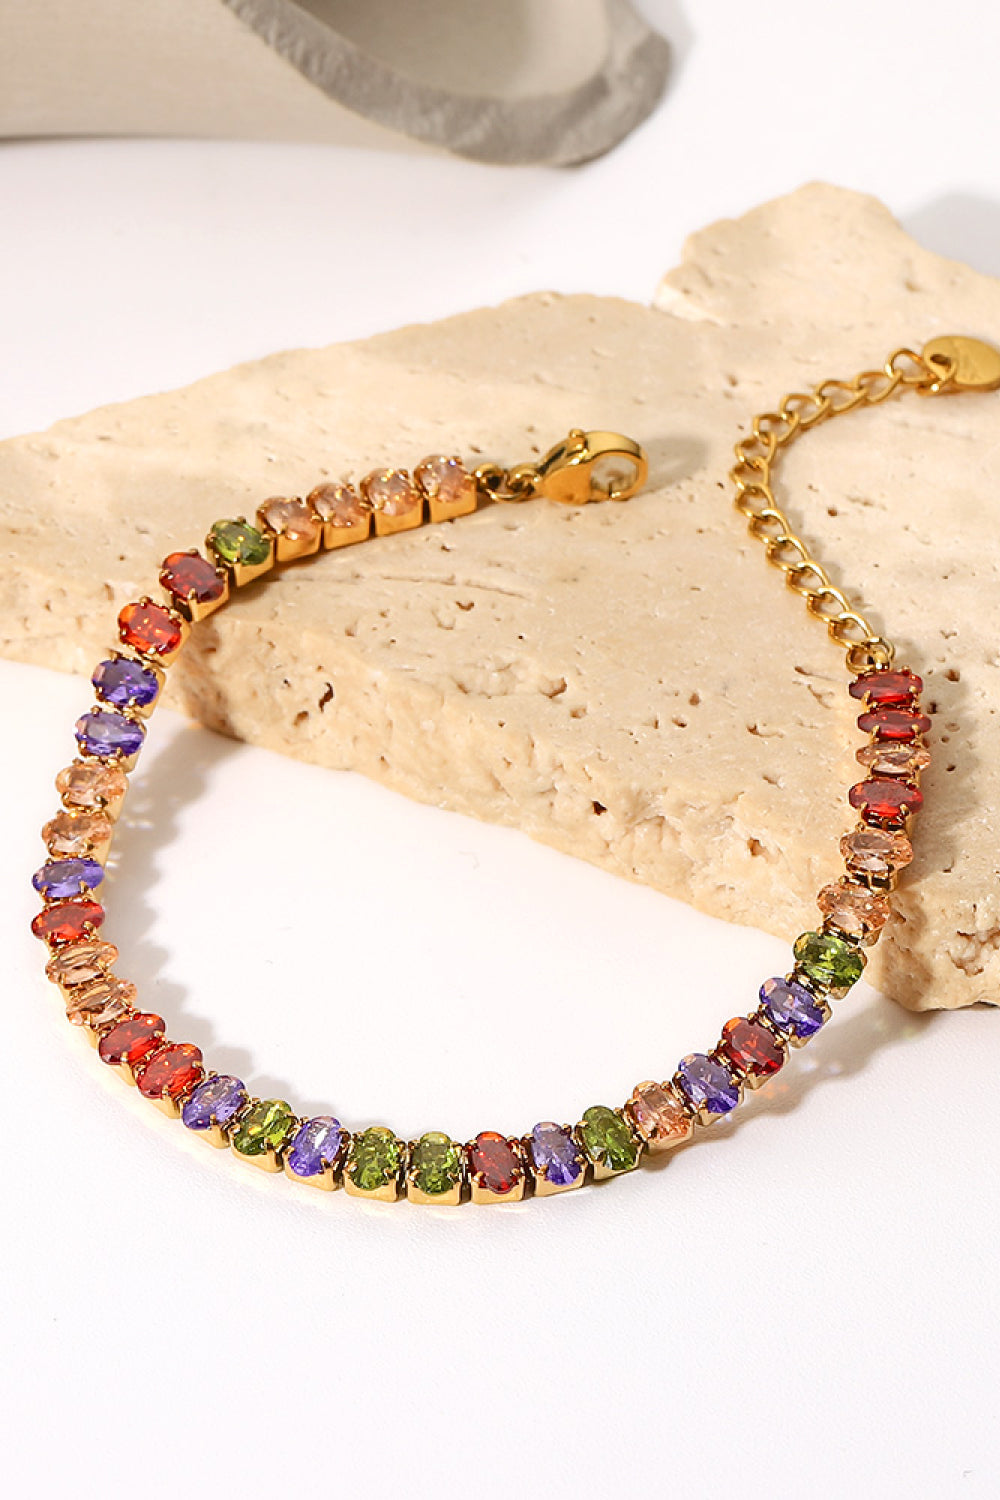 18K Gold Plated Multicolored Zircon Bracelet - Multicolored / One Size - Women’s Jewelry - Bracelets - 3 - 2024